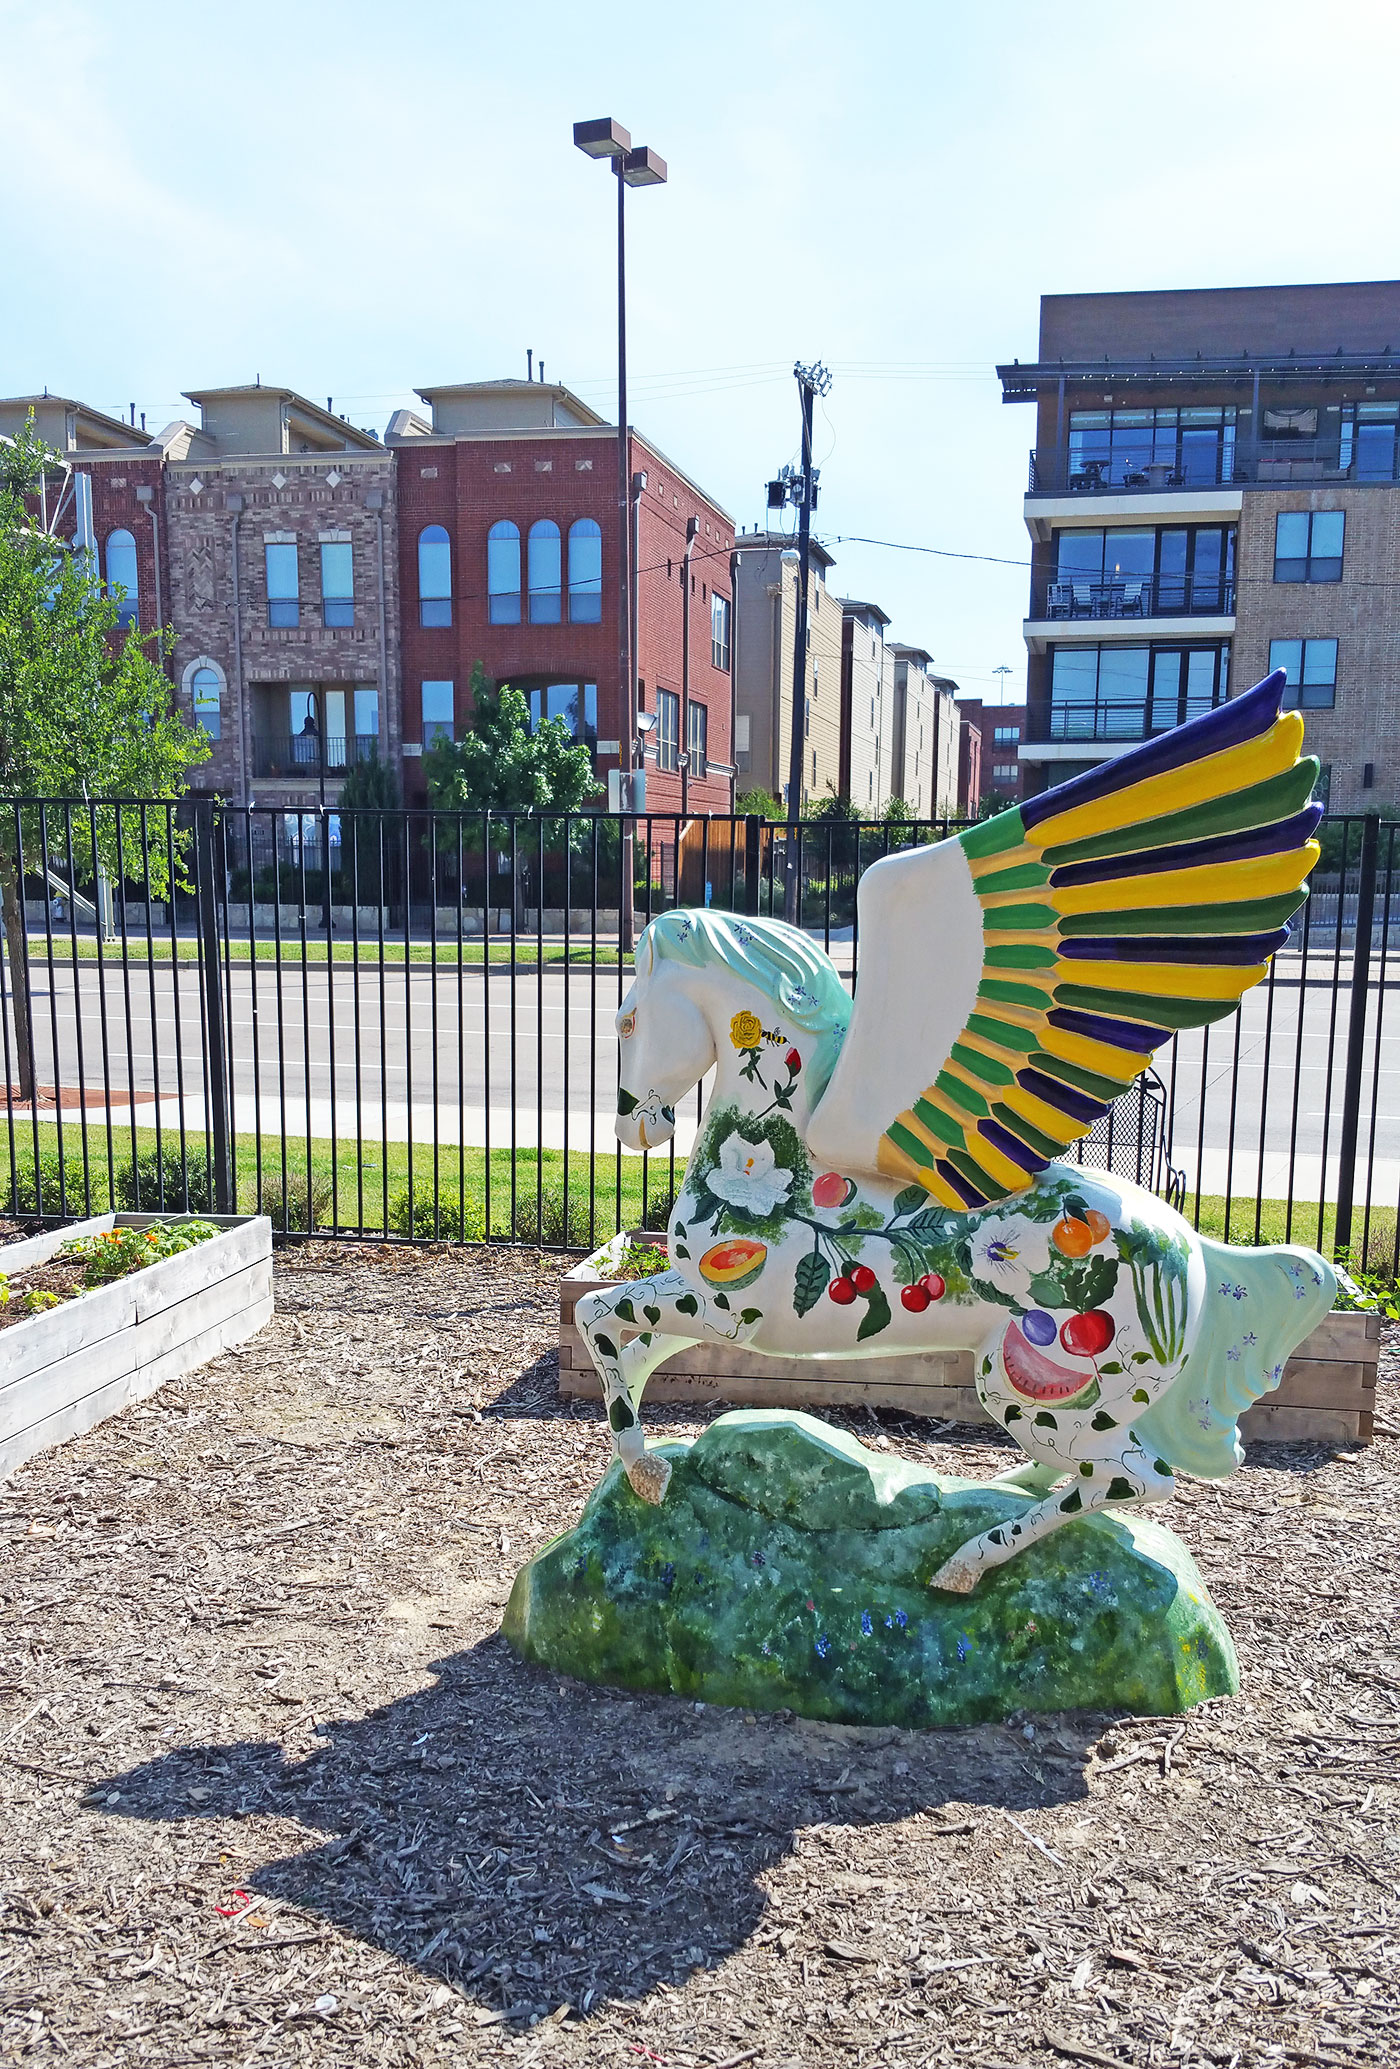 The Pegasus statue at the Dallas Farmers' Market.